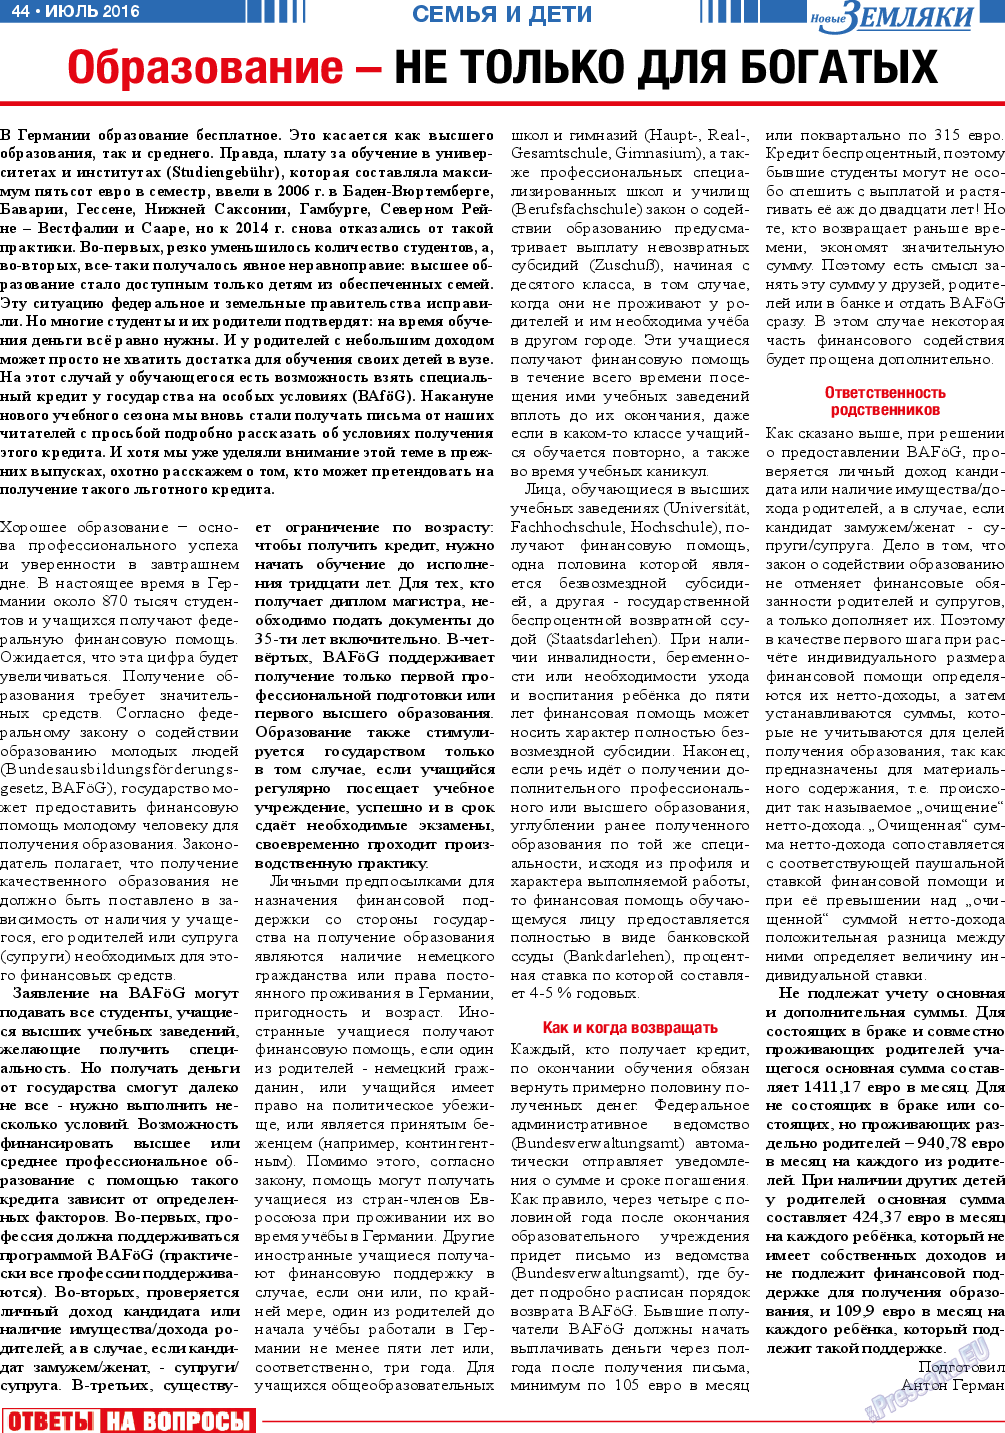 Новые Земляки (газета). 2016 год, номер 7, стр. 44